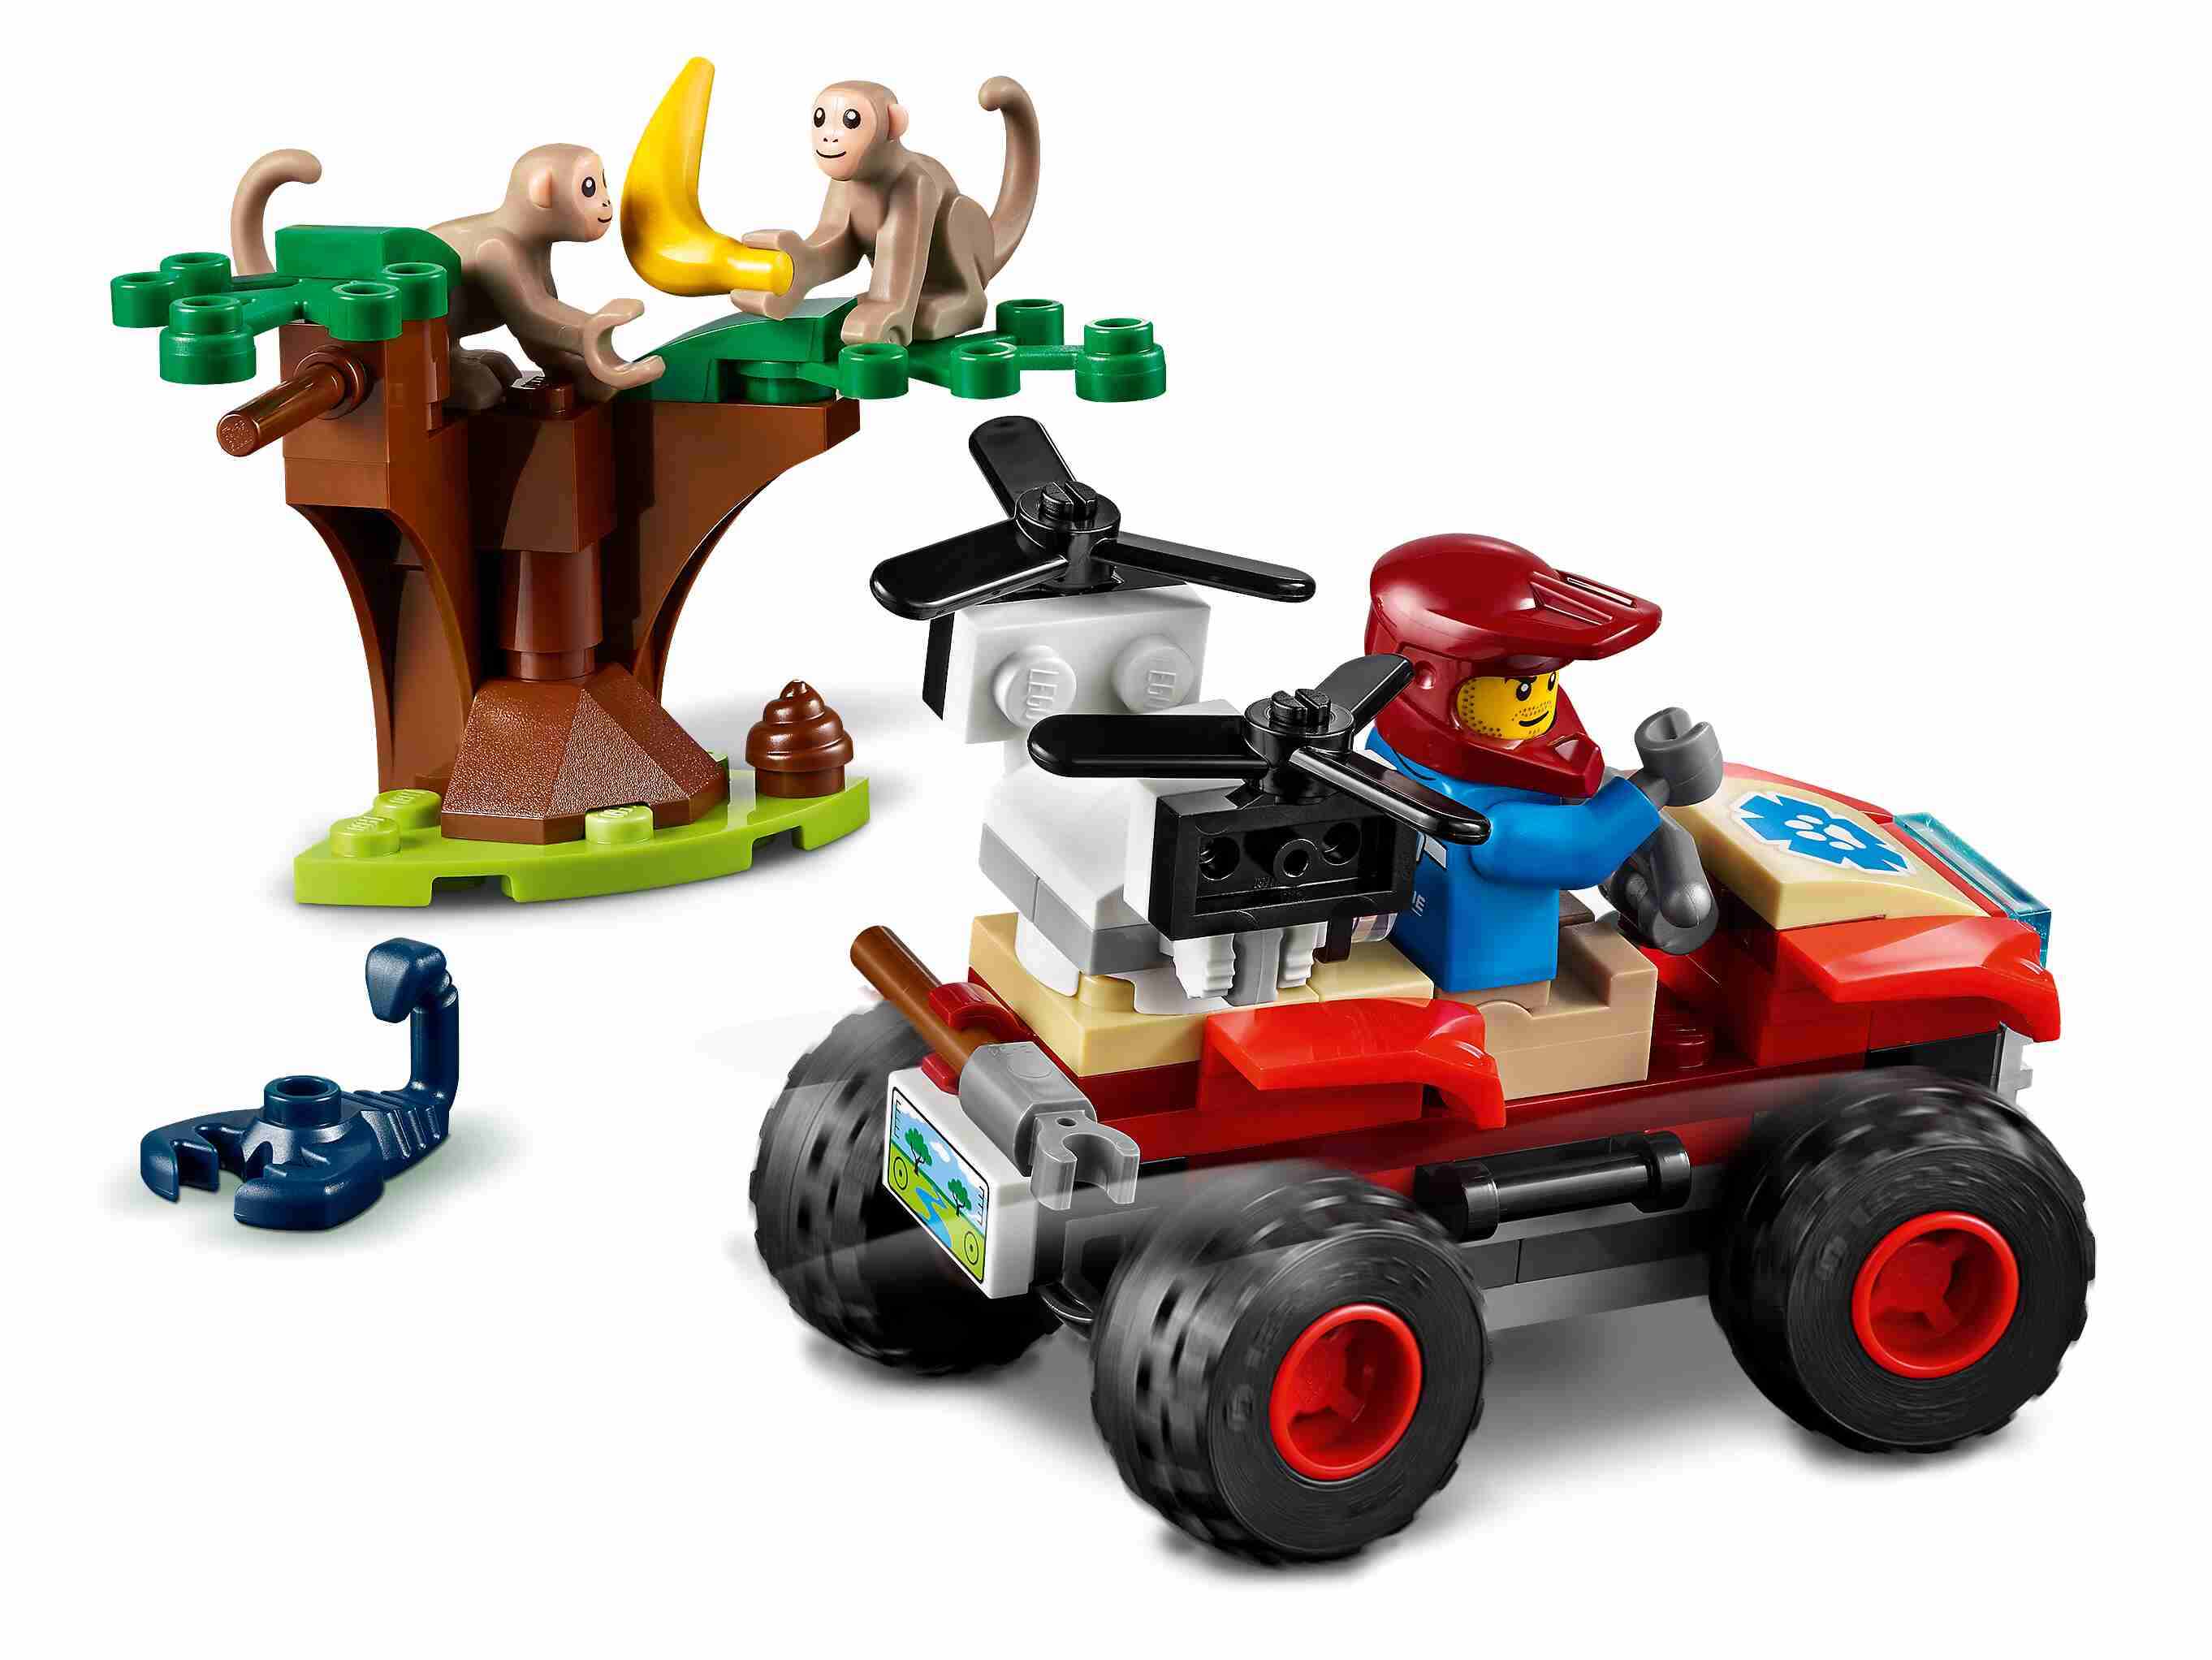 LEGO 60300 City Wildlife Tierrettungs-Quad, Forscher, 2 Affen, Skorpion